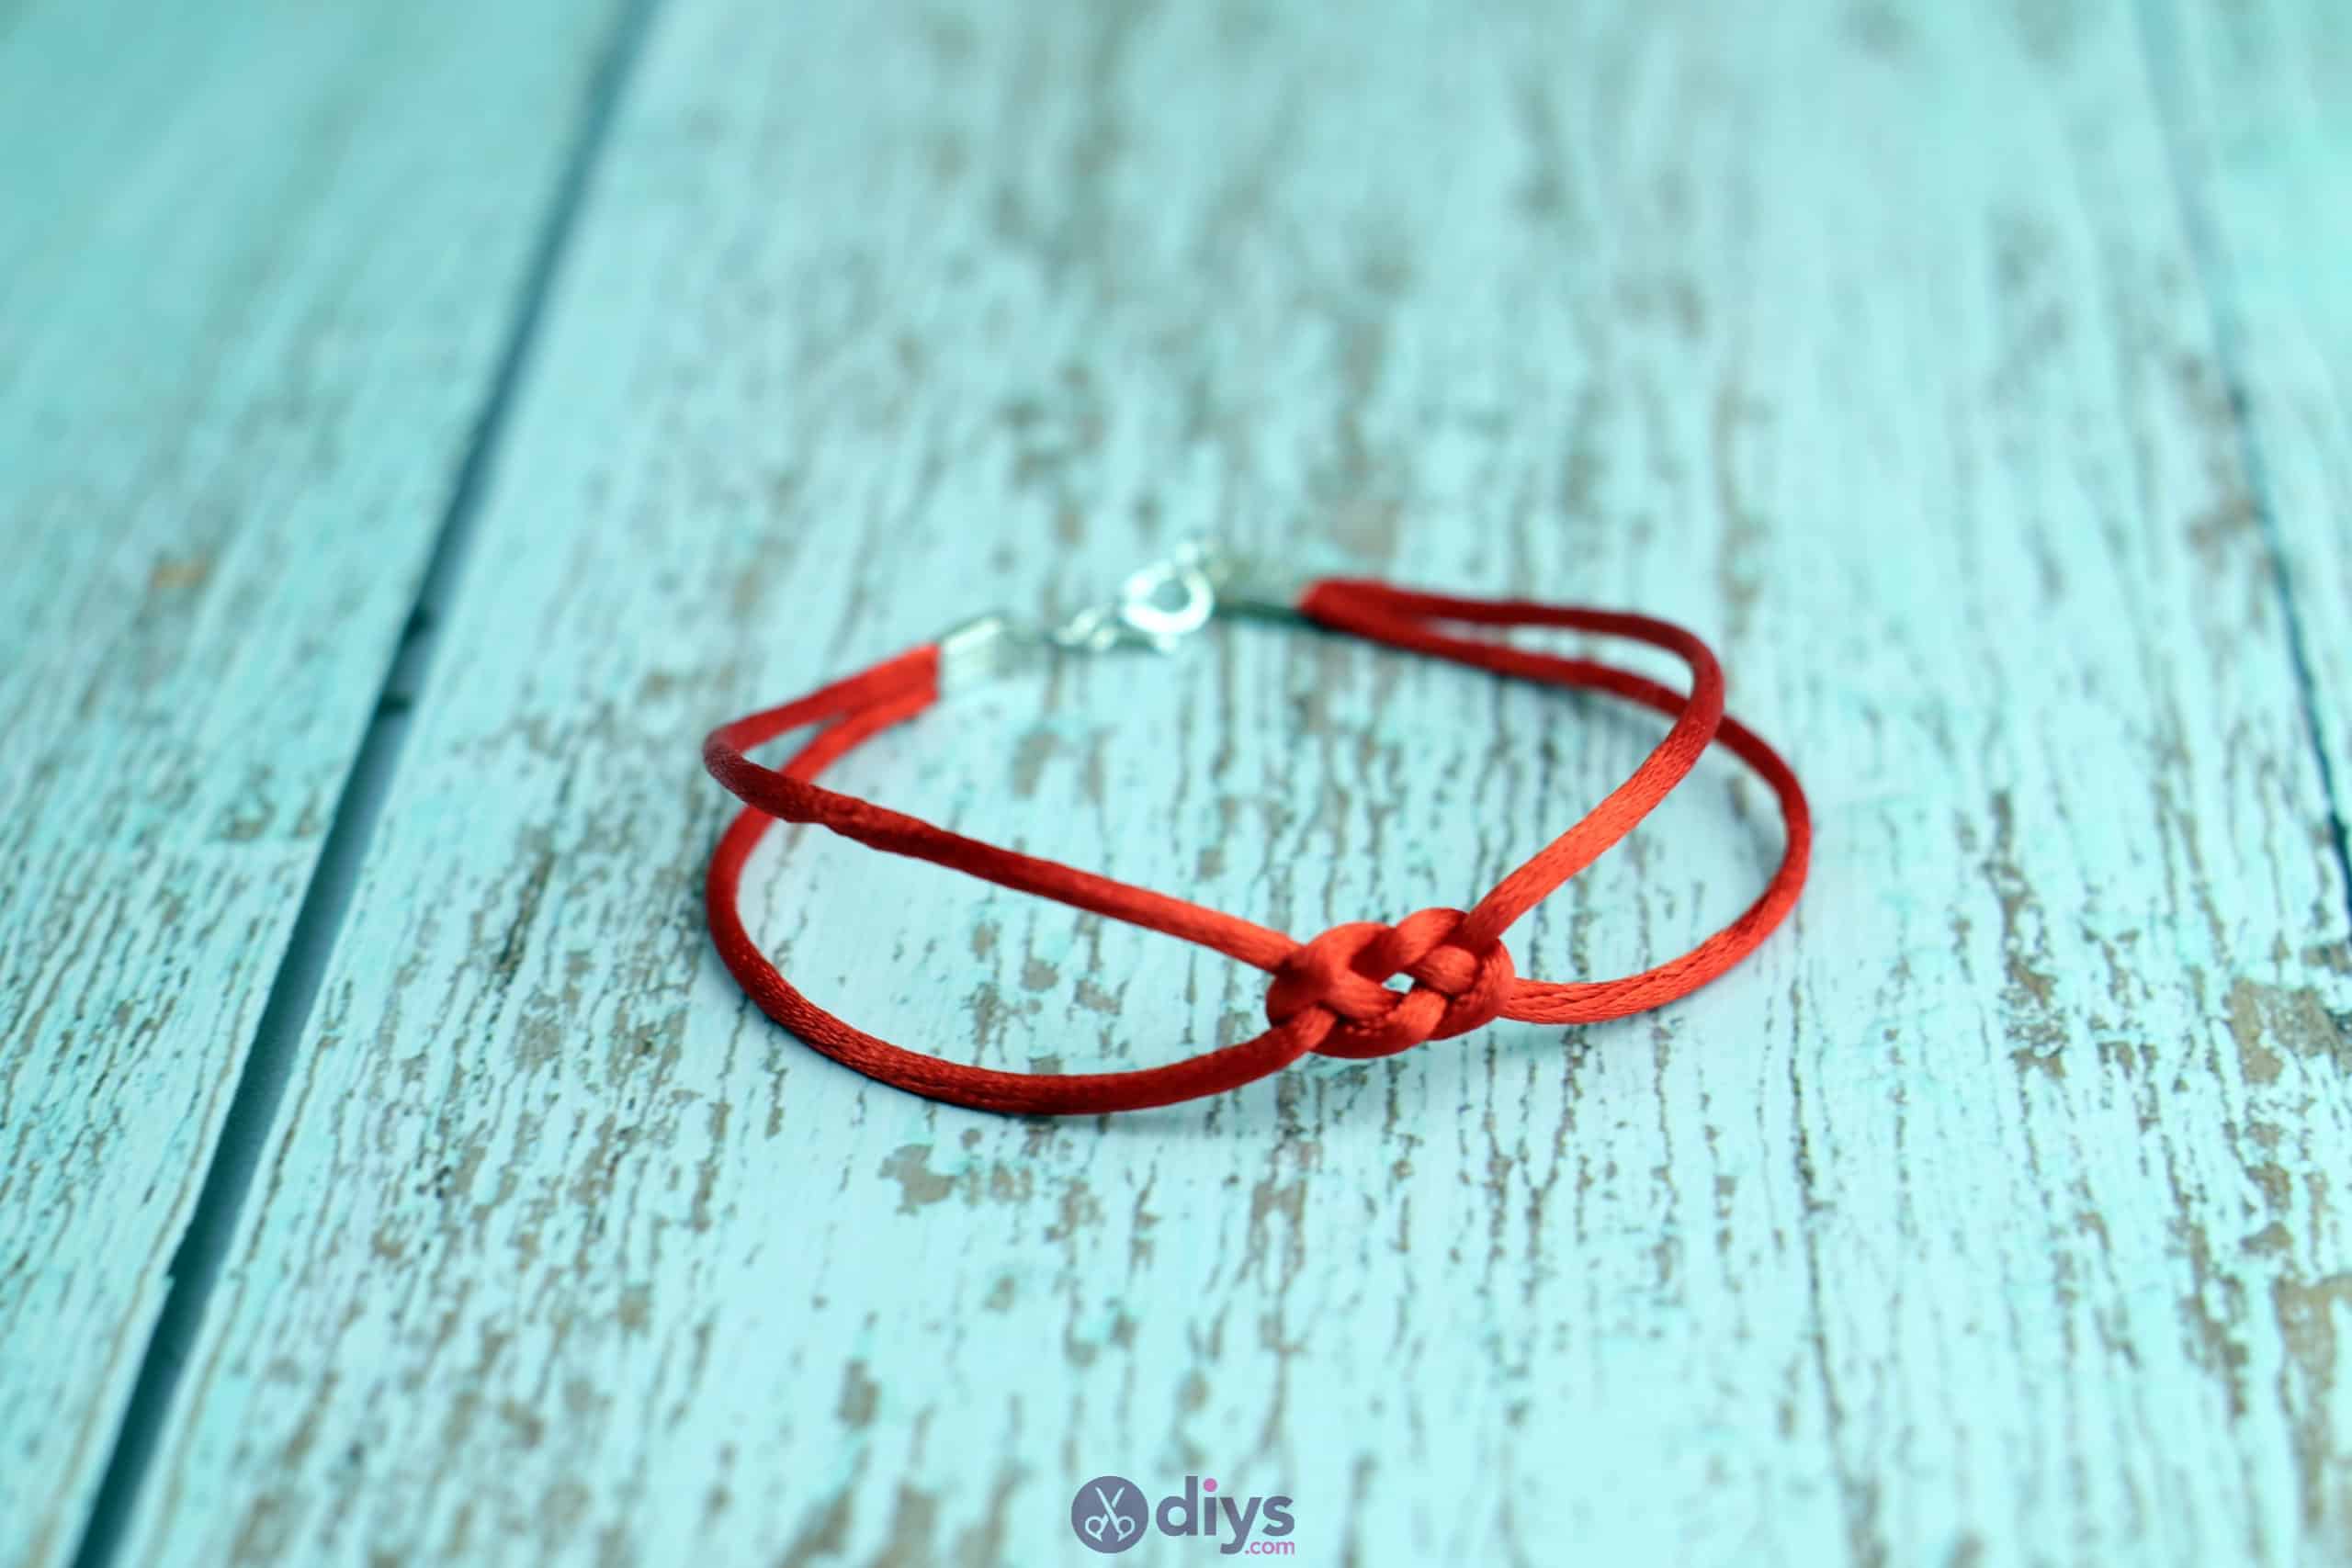 Diy knotted bracelet project